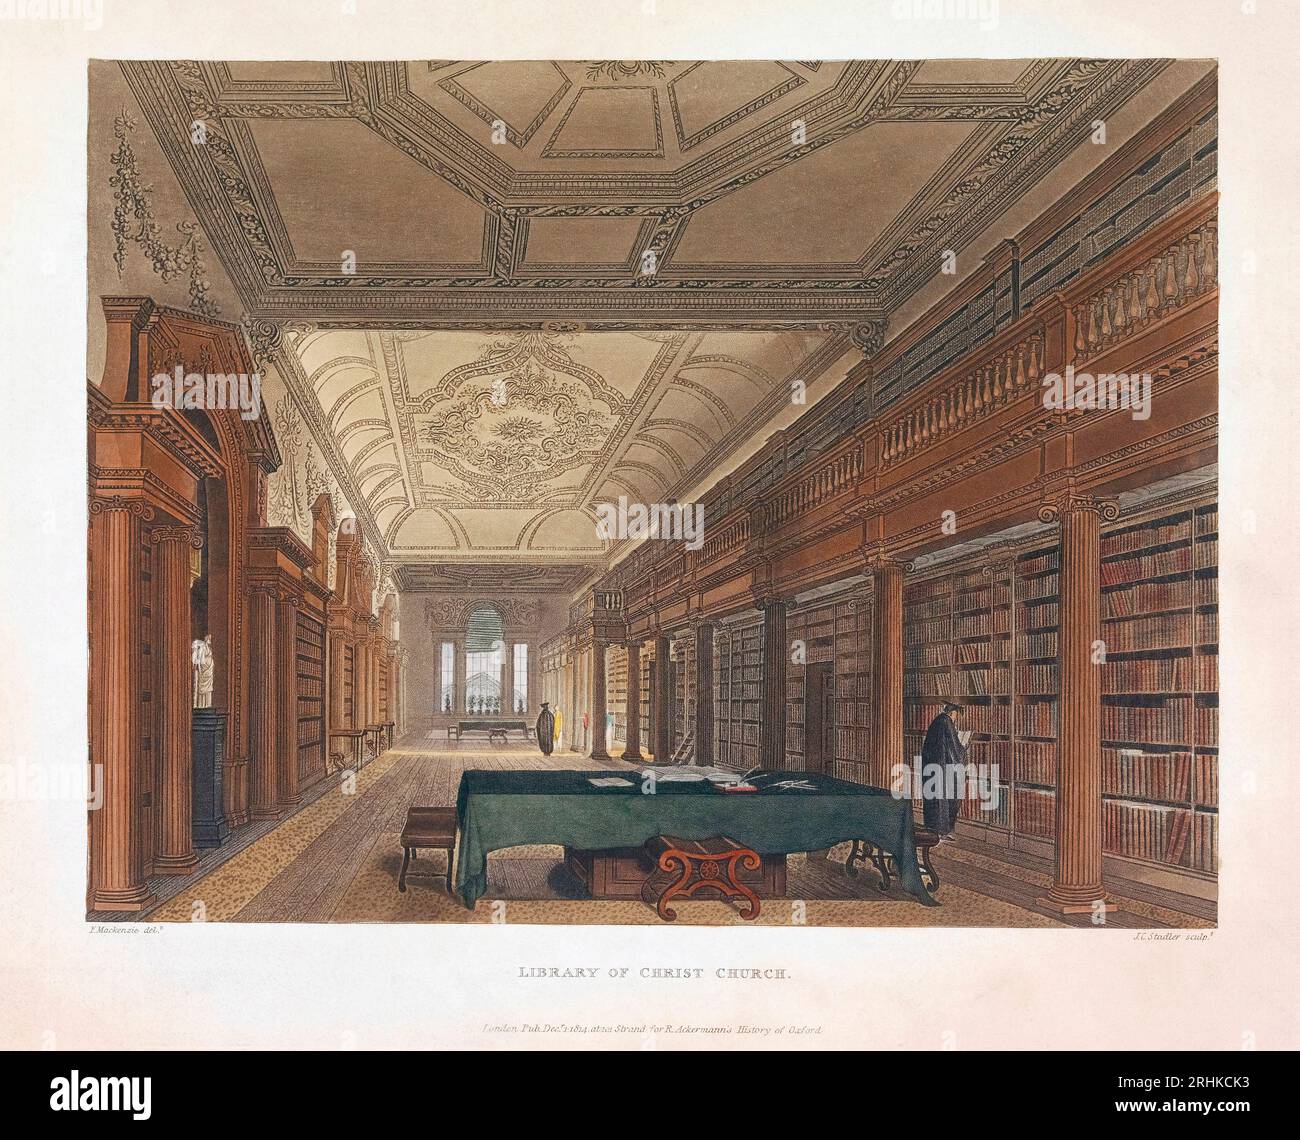 Die Bibliothek der Christ Church in Oxford, England zu Beginn des 19. Jahrhunderts. Nach einem Druck von Joseph Constantine Stadler aus einem Werk von Frederick Mackenzie. Spätere Kolorisation. Stockfoto